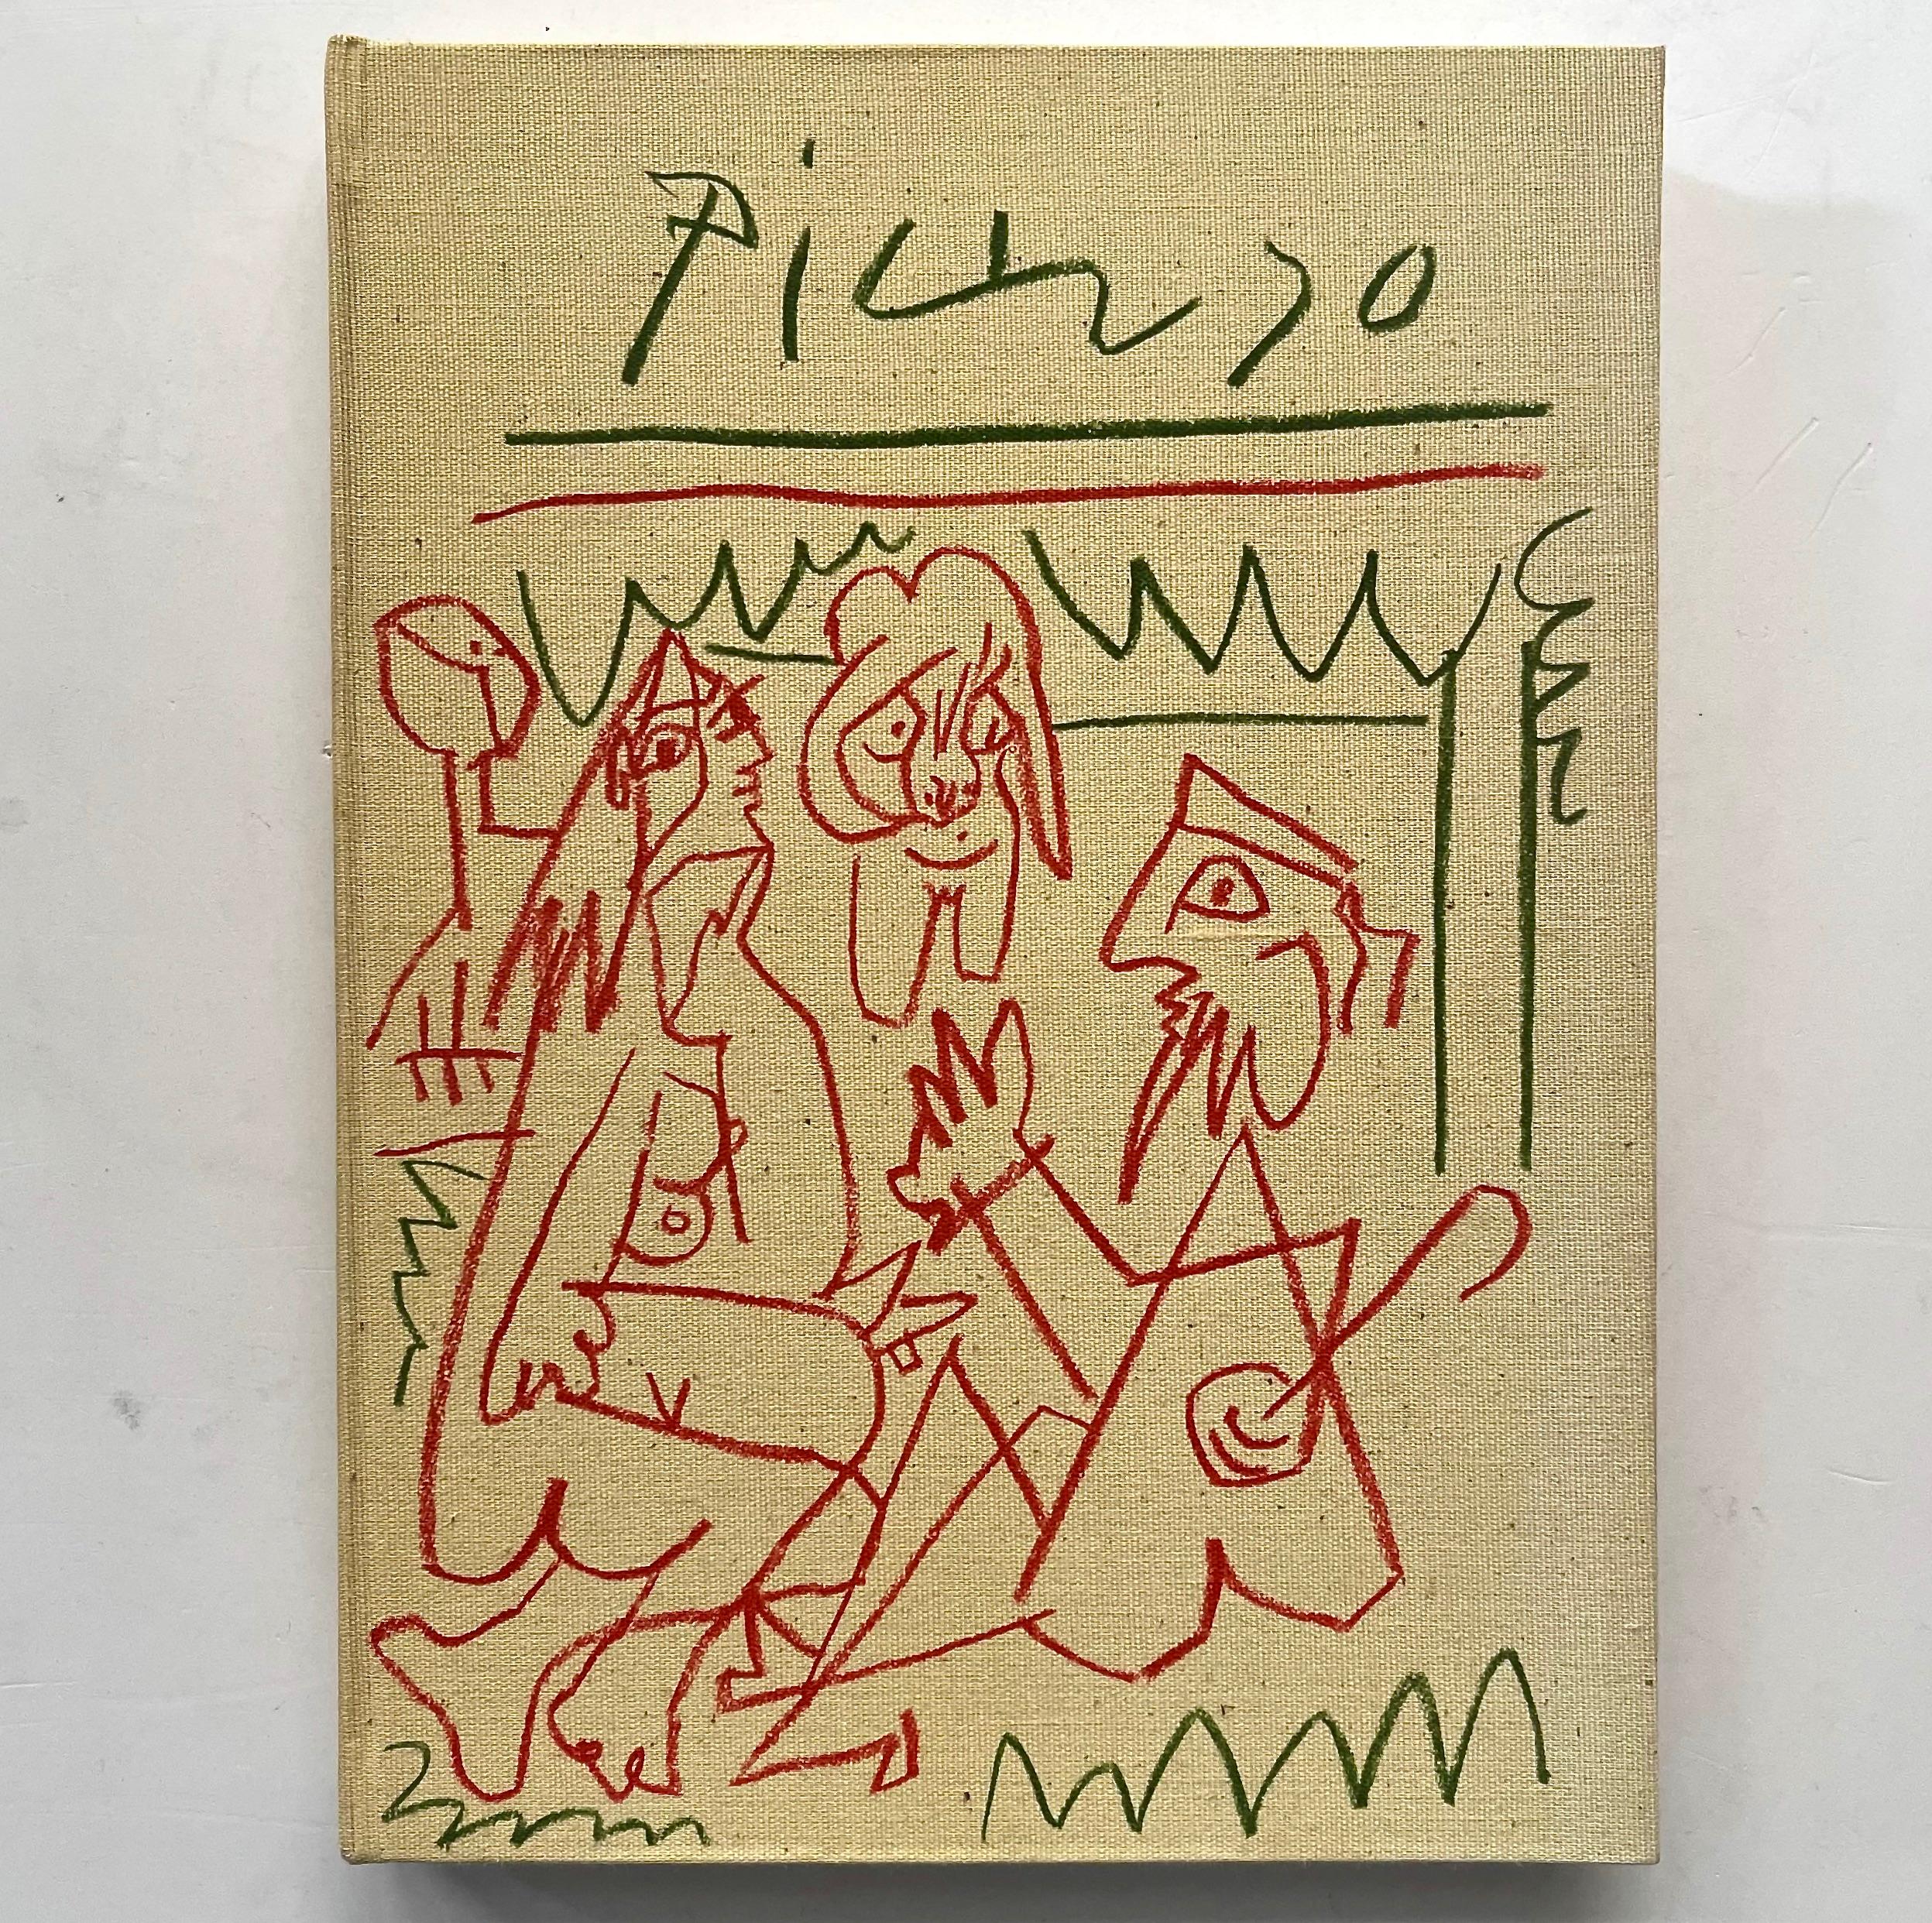 Les Déjeuners - Picasso, 1. französische Ausgabe, 1962u2028Veröffentlicht von Éditions Circle D'art Paris, 1962 u2028
Ein schönes Exemplar von Picassos bahnbrechendem Buch Les Déjeuners, komplett mit feinem Leinenschuber und bedruckten beigen